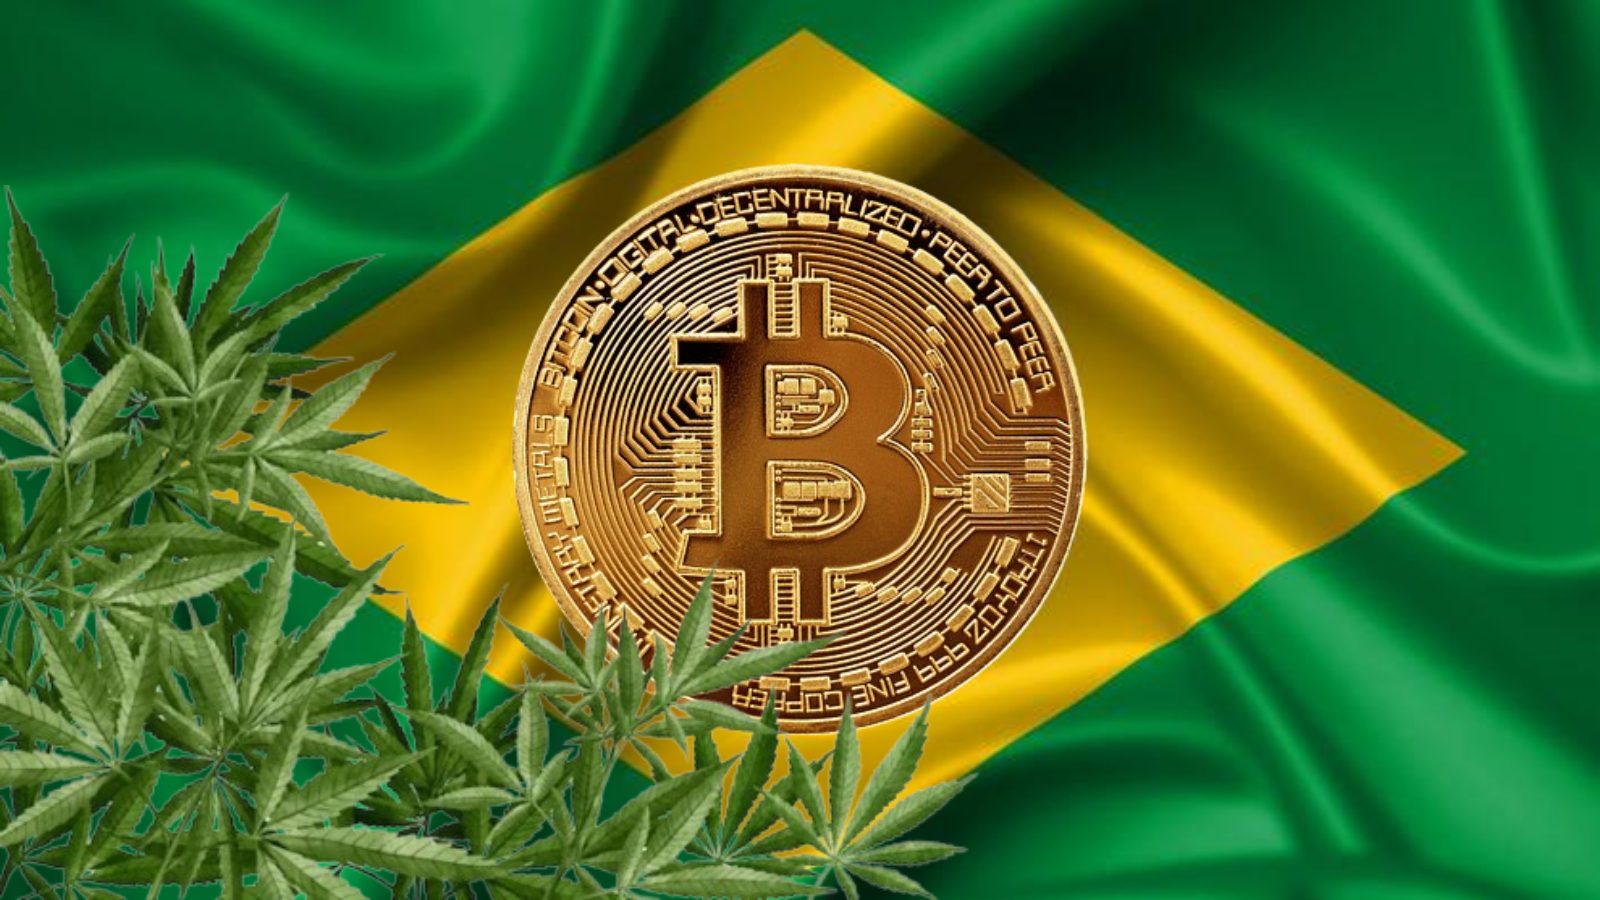 criptomoedas maconha Brasil fundos de investimento